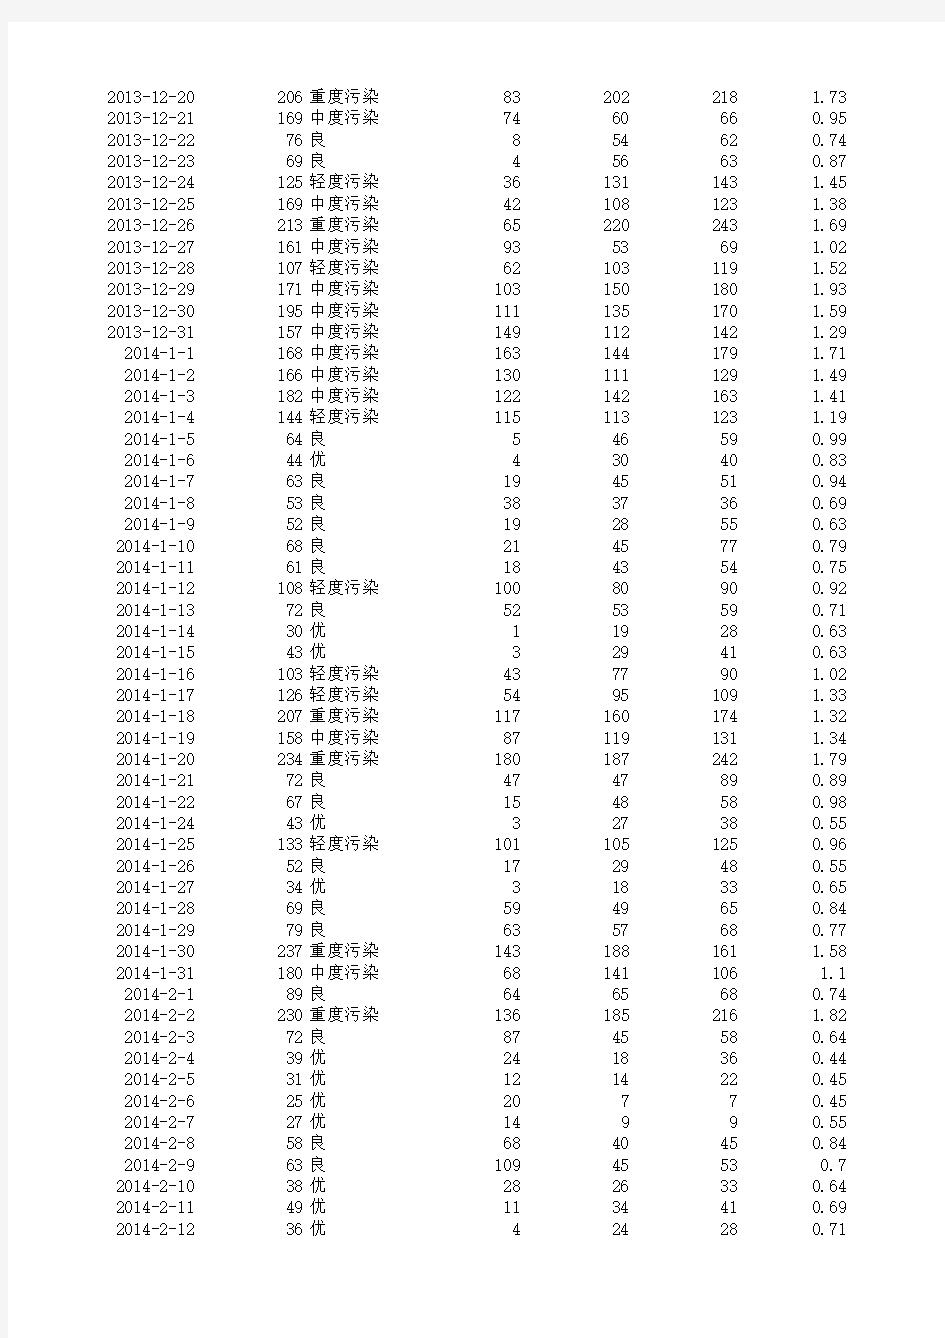 上海市2013年11月至2015年4月空气质量汇总表